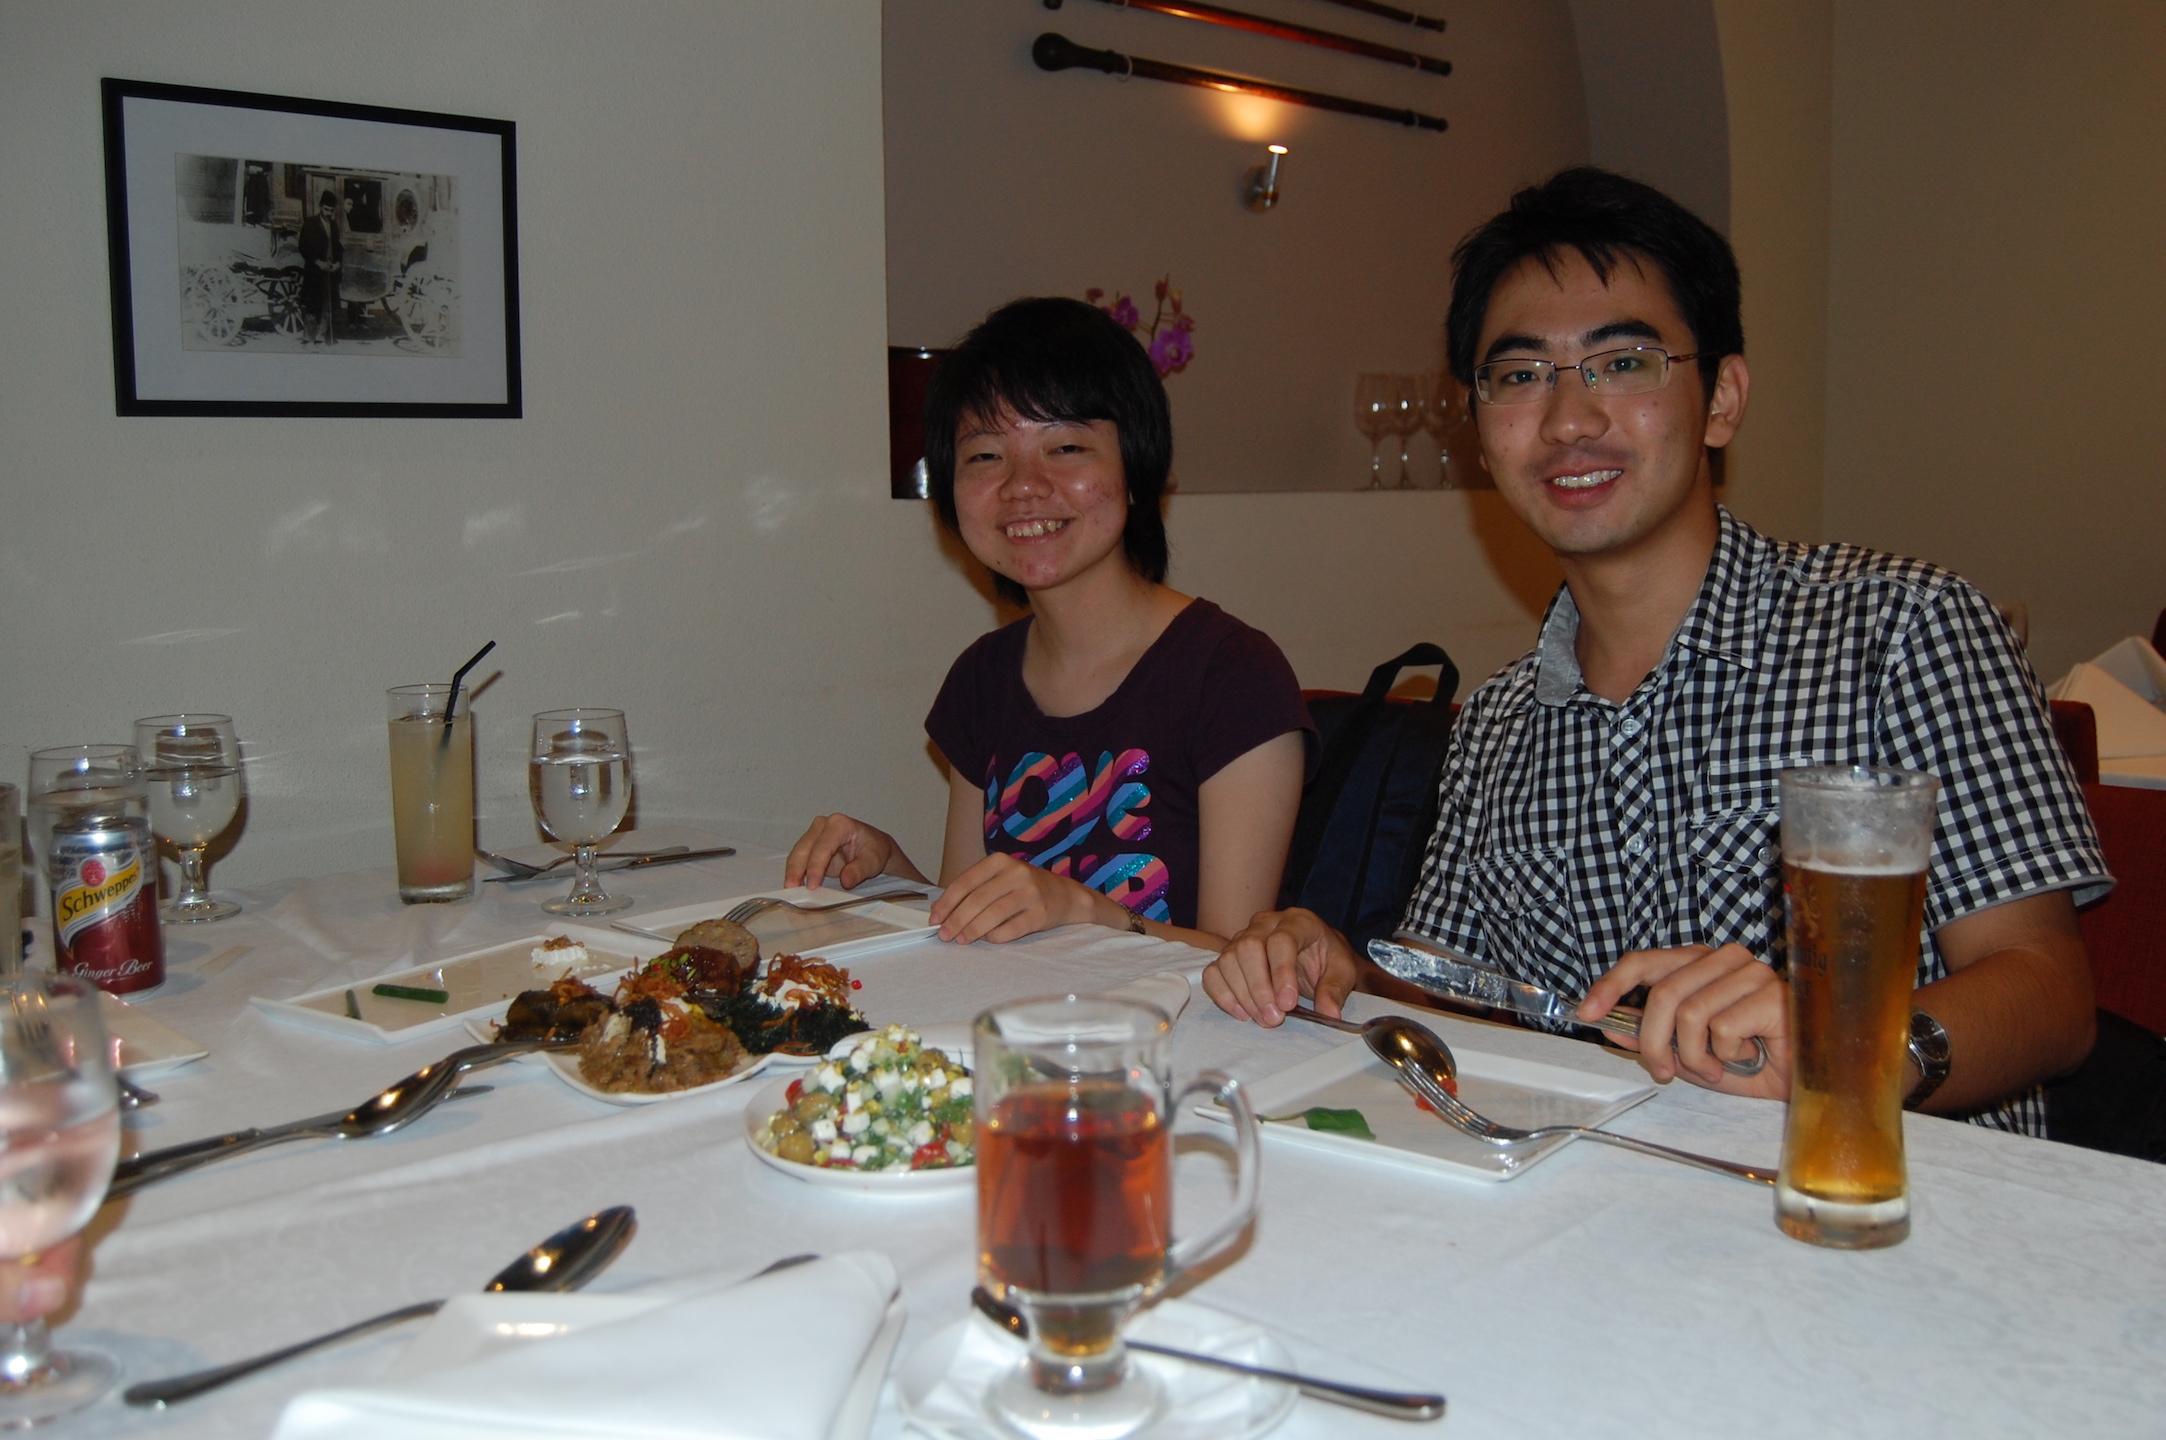 <b>6 Aug 2012 - Shiraz @ Clarke Quay</b> <br>Left to Right: Tao Chen, Xiangnan He